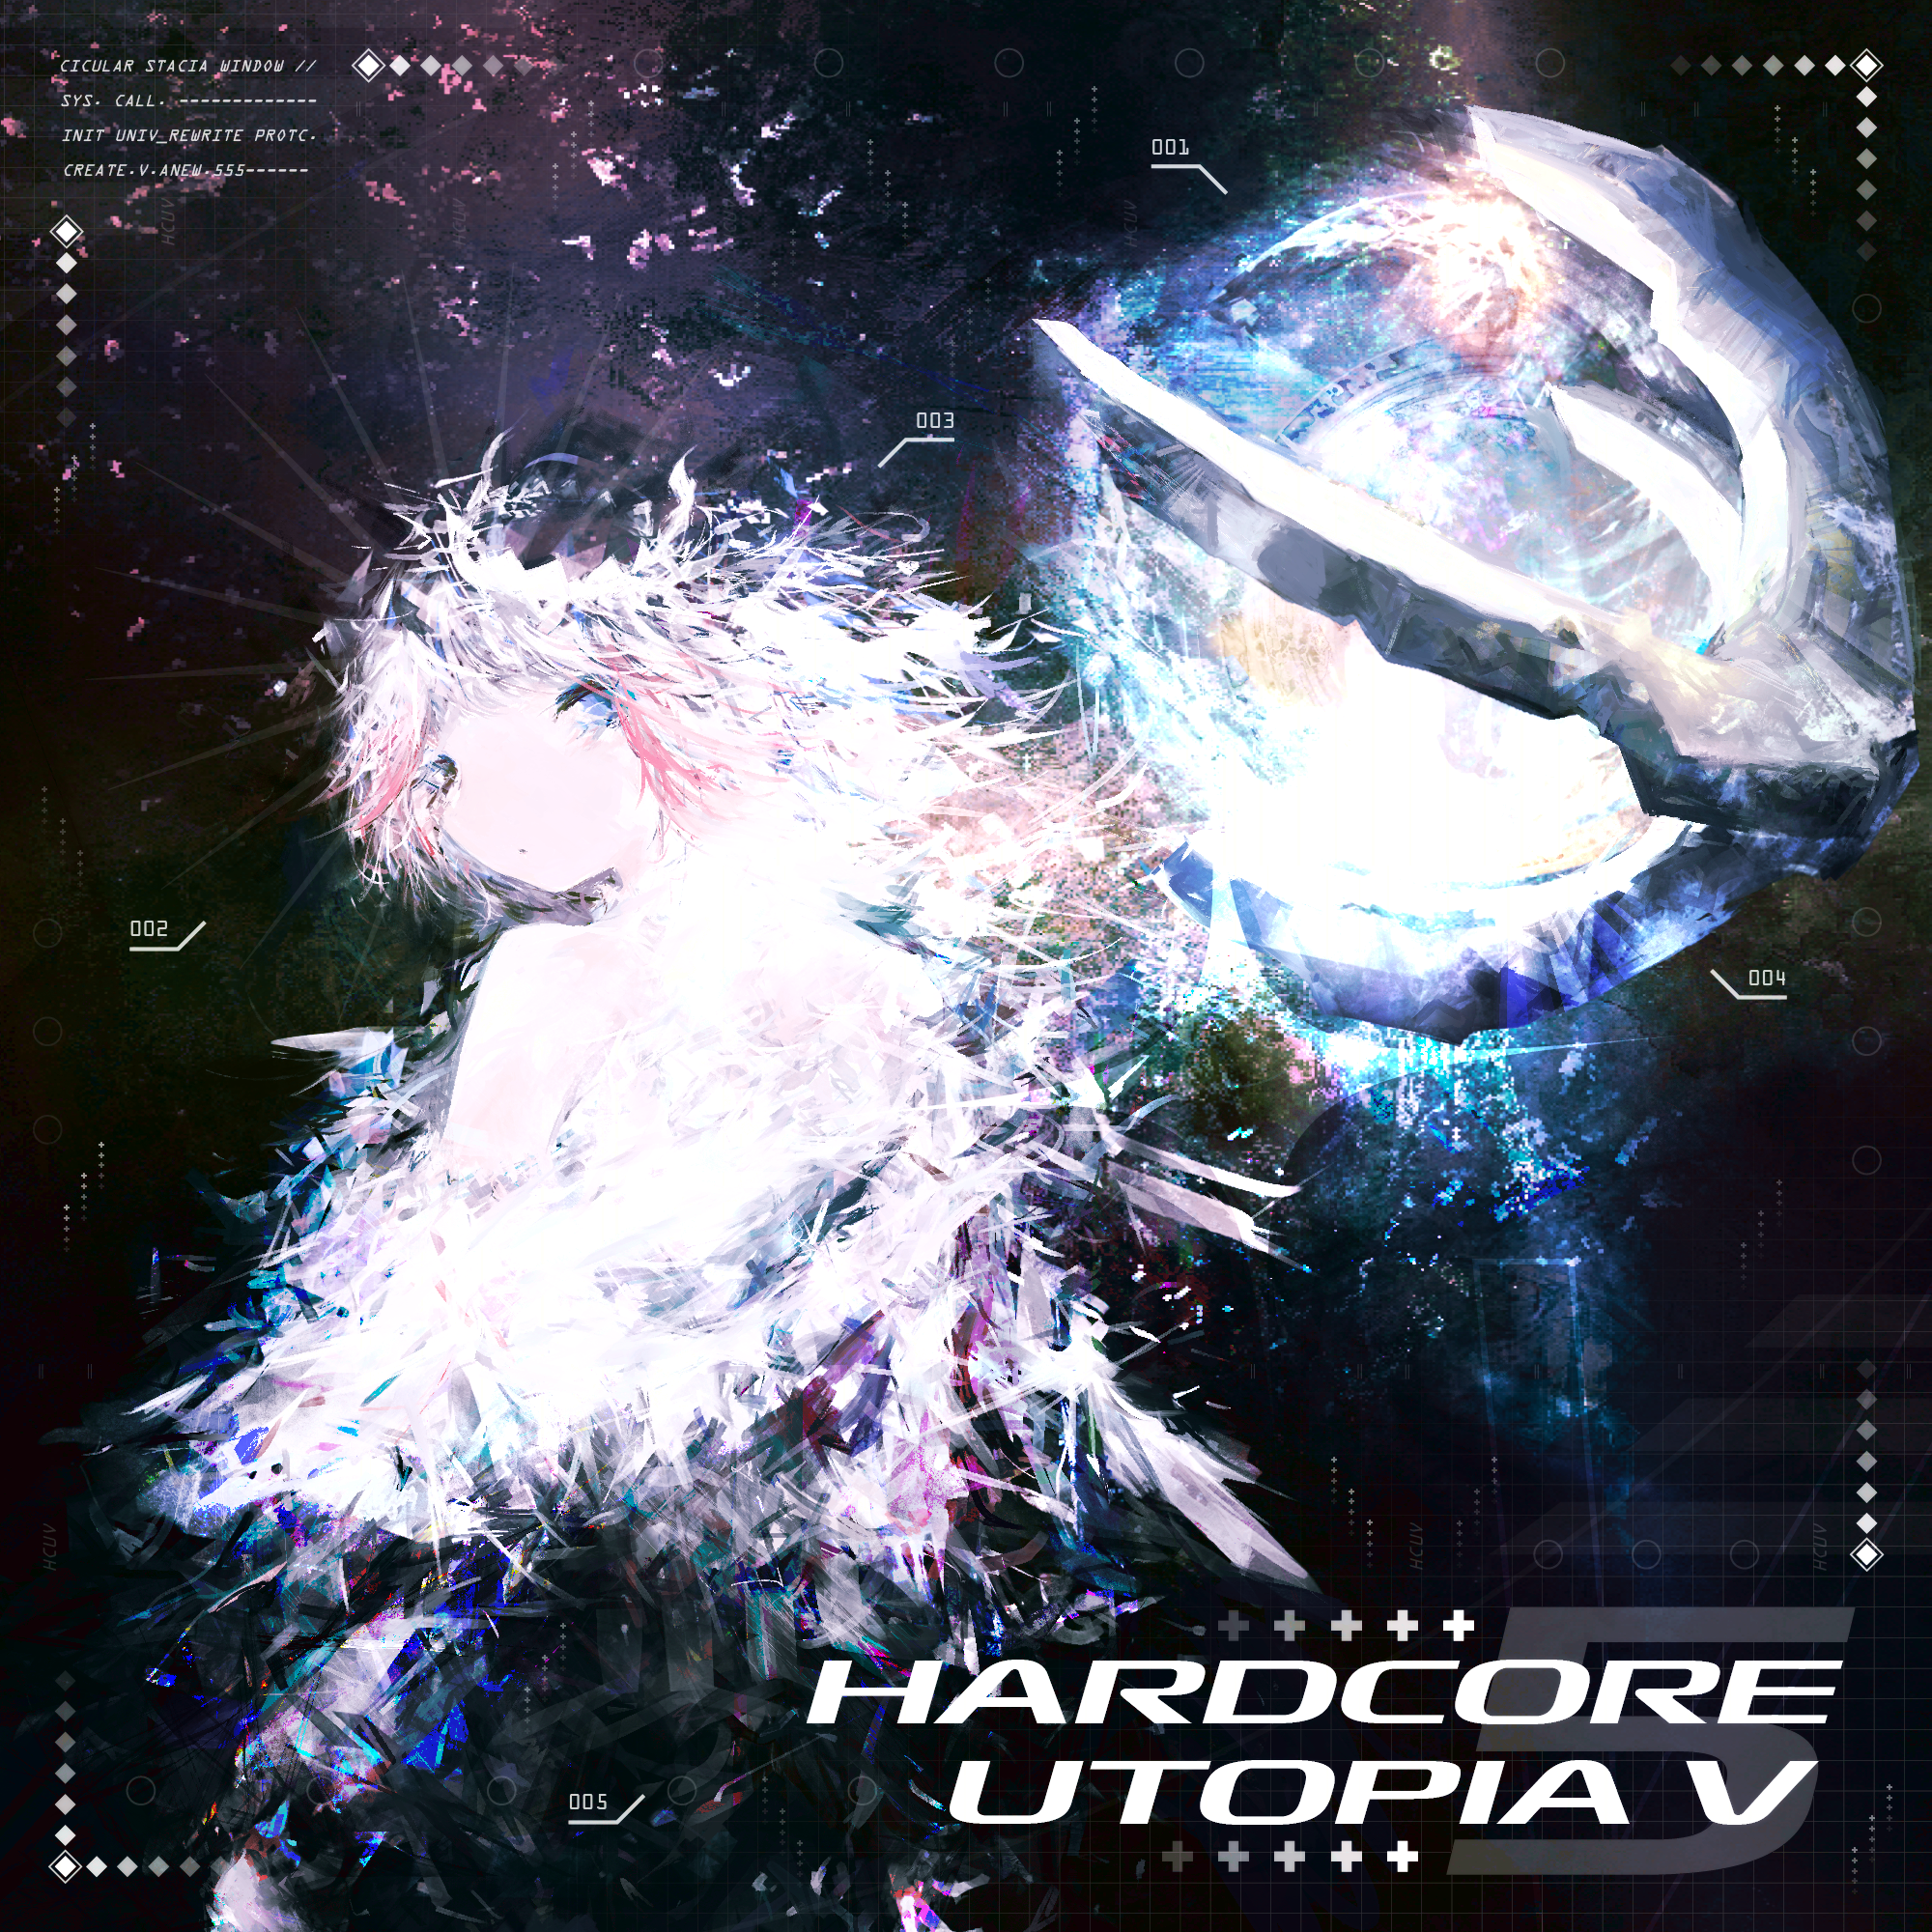 Hardcore Utopia 5 album cover